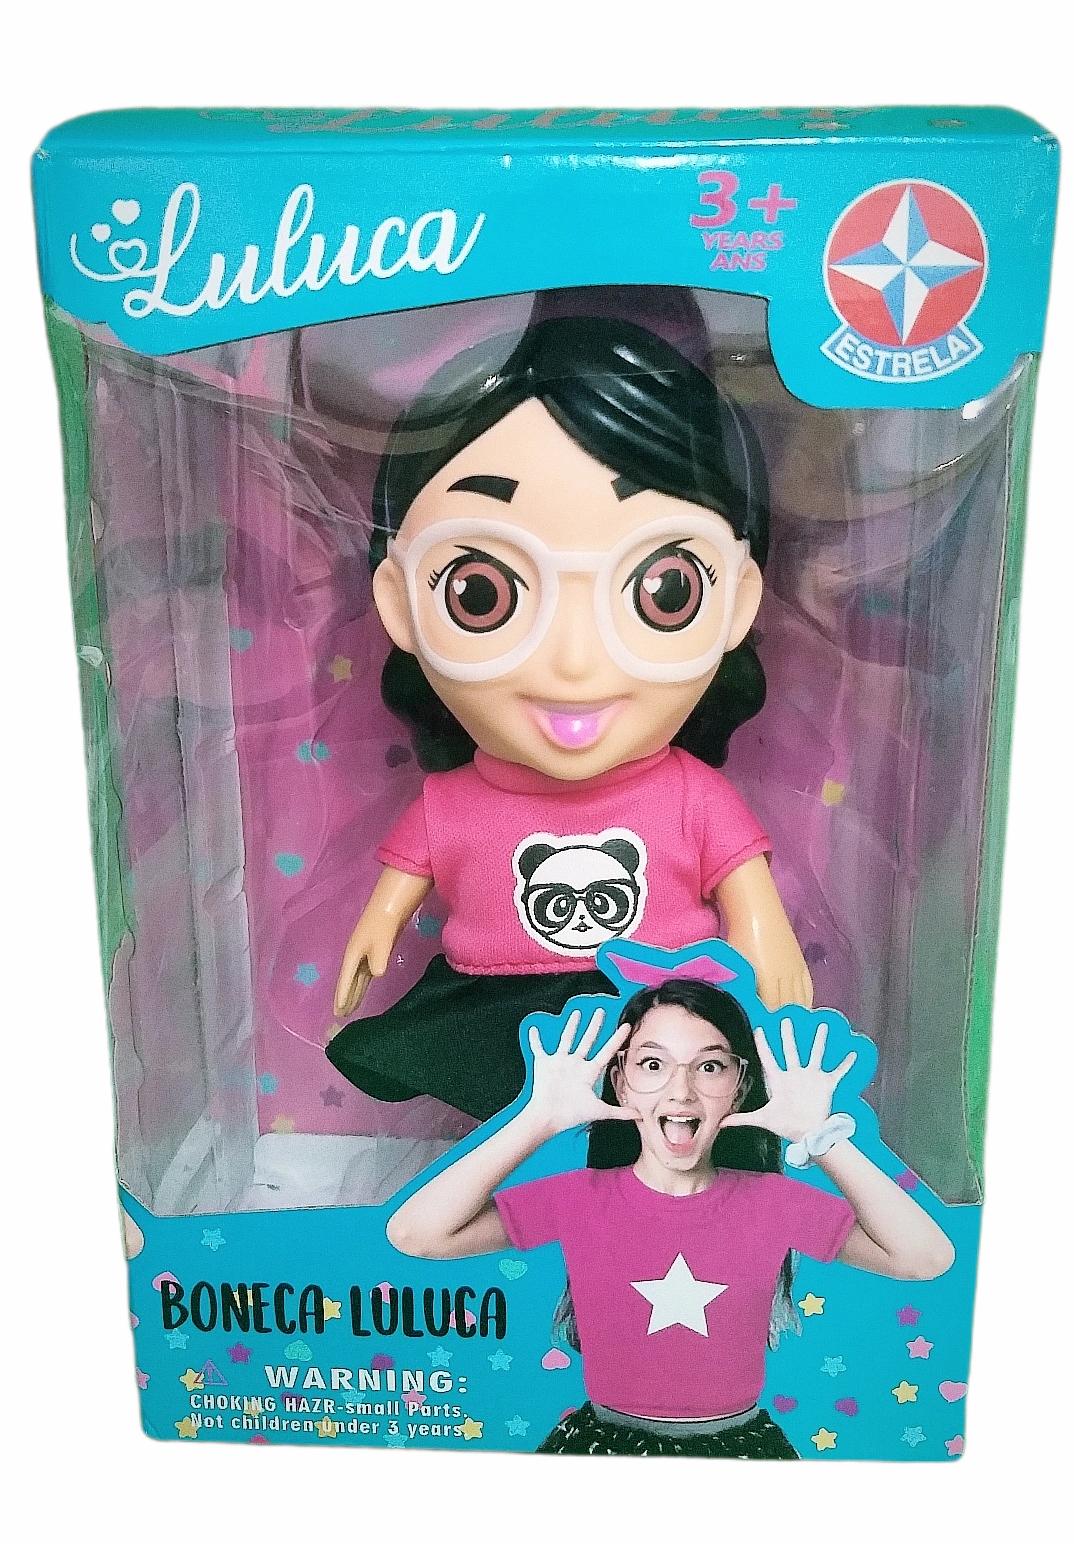 Boneca Luluca com Som 30 cm - Estrela - Estrela